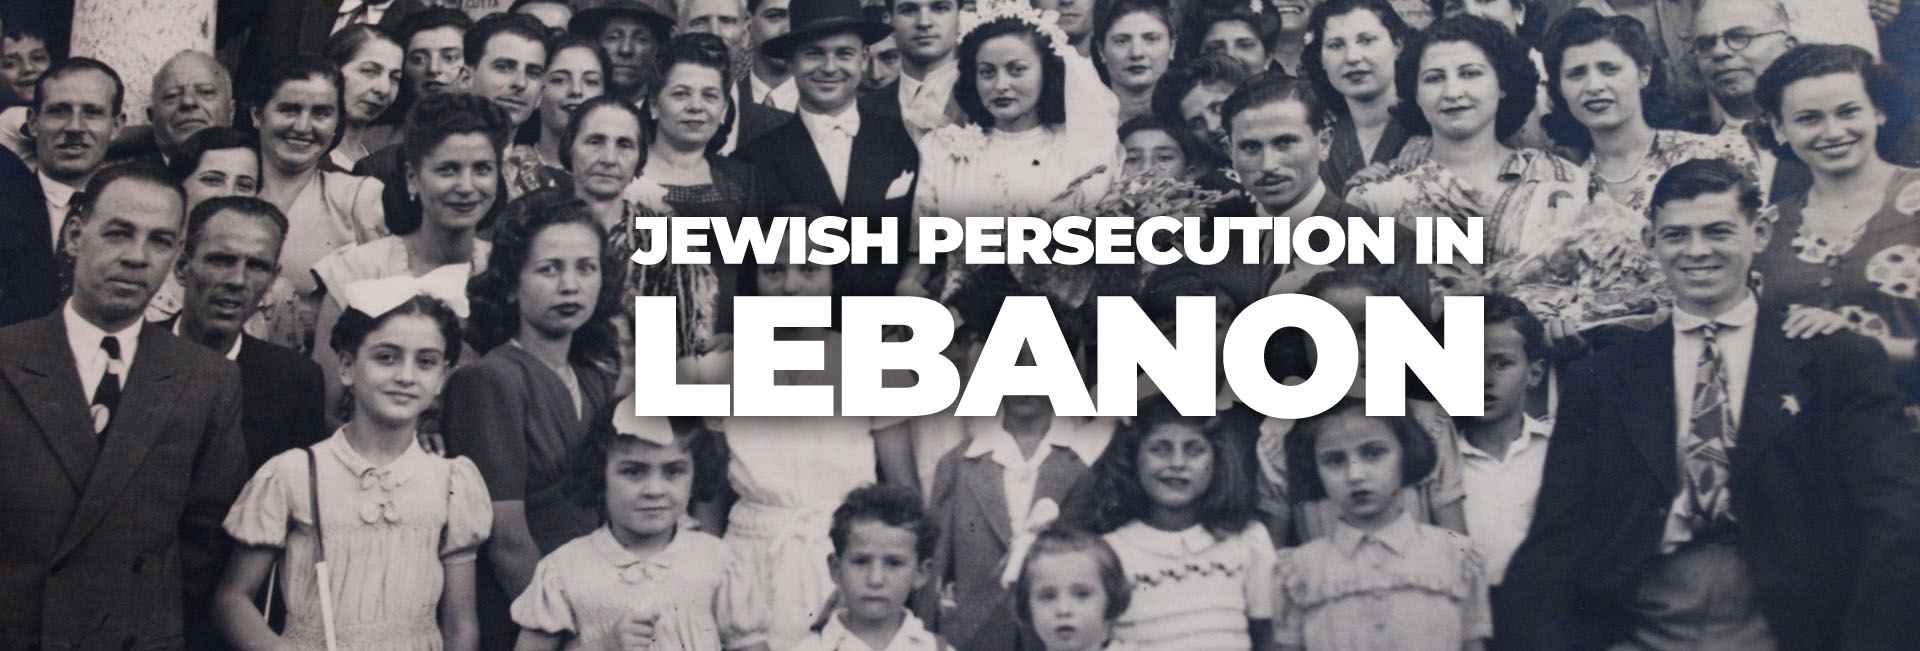 Jewish Persecution in Lebanon